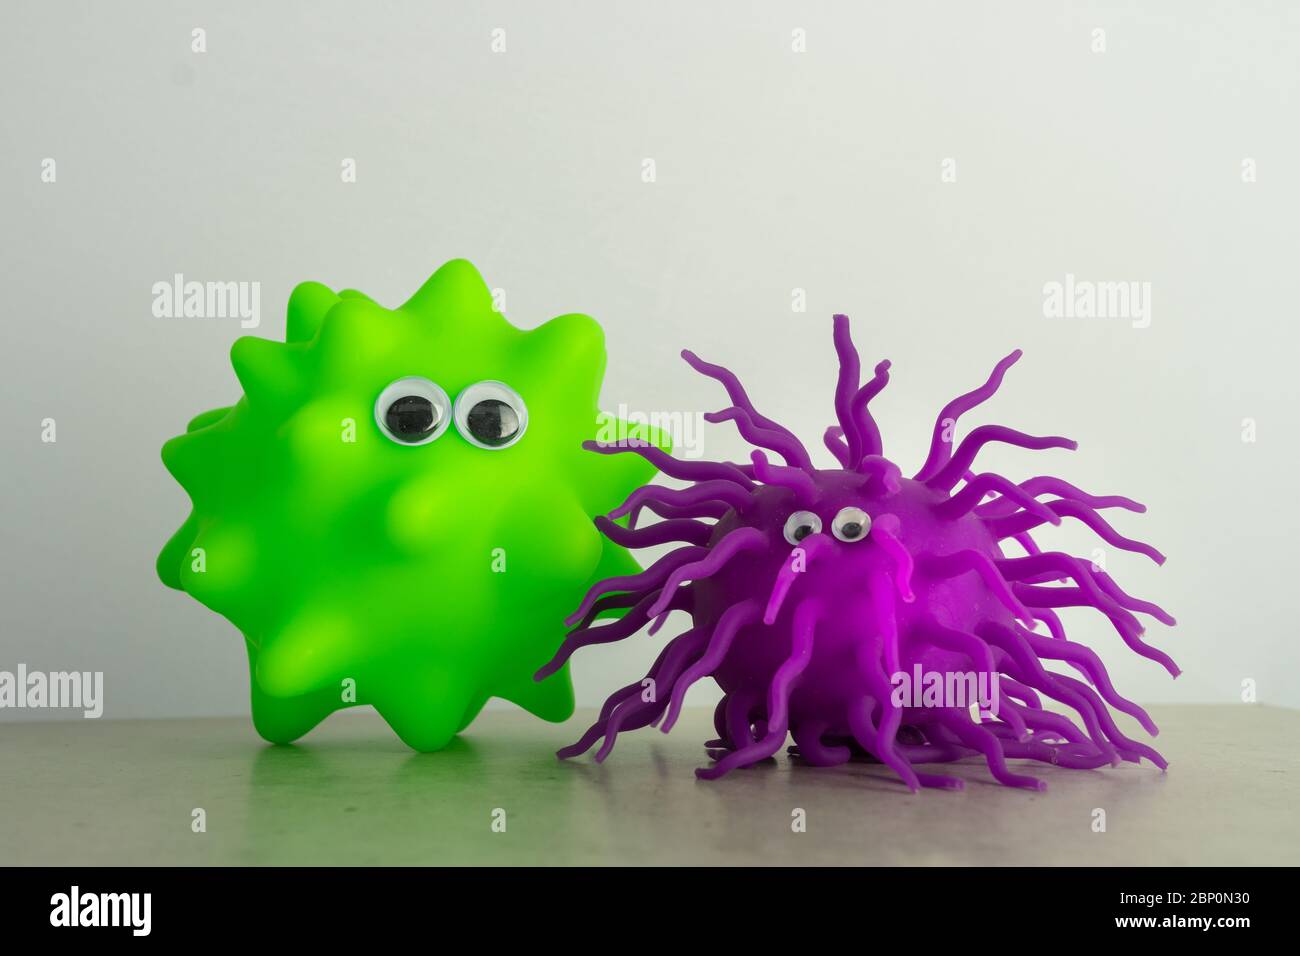 Un giocattolo verde per il cane e una palla gummia viola con gli occhi come una rappresentazione di virus o batteri Foto Stock